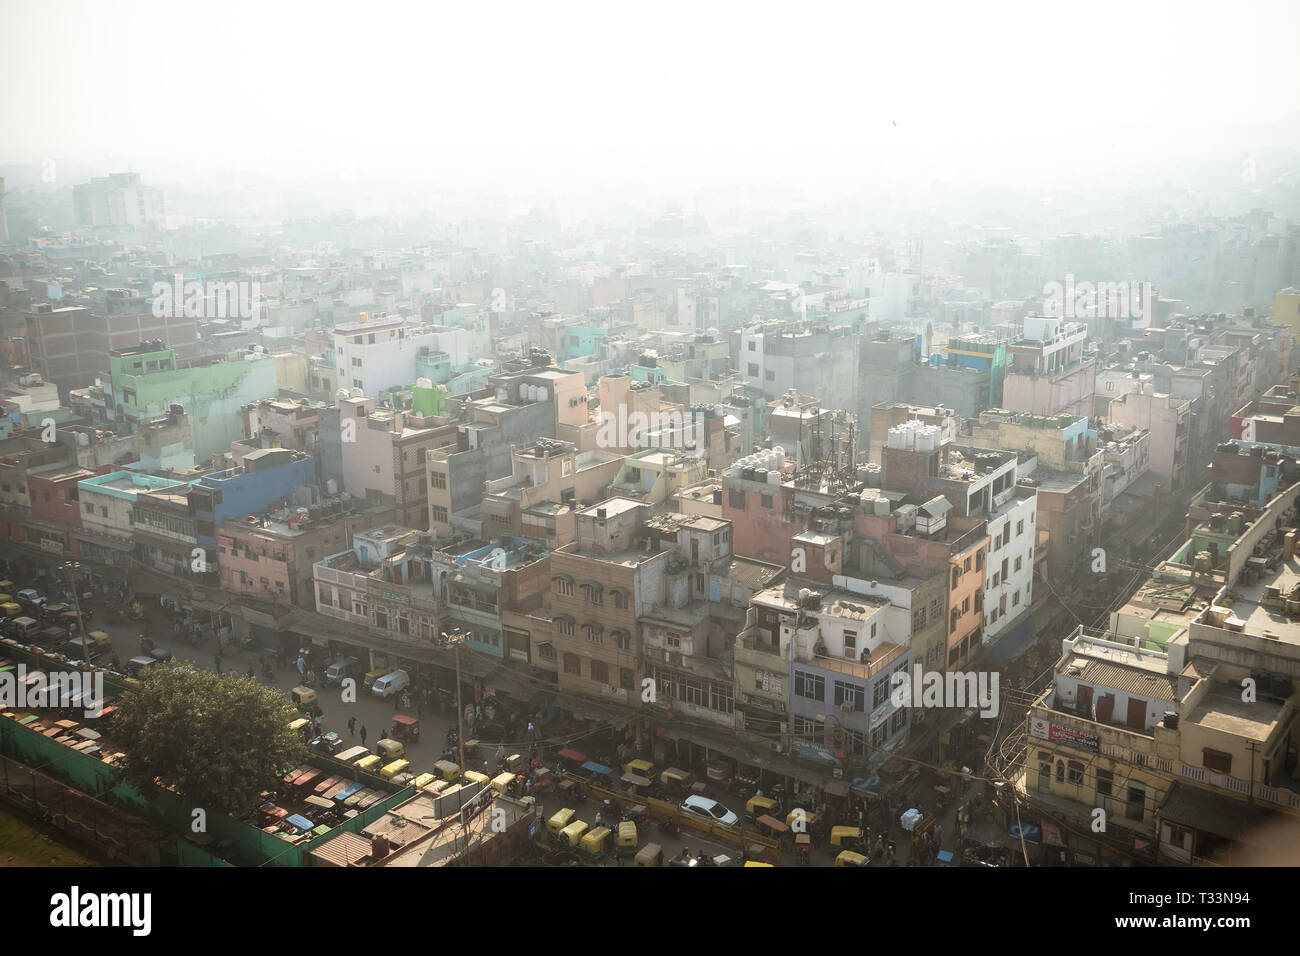 Vista superior de la calle de la ciudad en el barrio pobre de Nueva Delhi. La contaminación del aire y el smog en ciudades superpobladas. Foto de stock